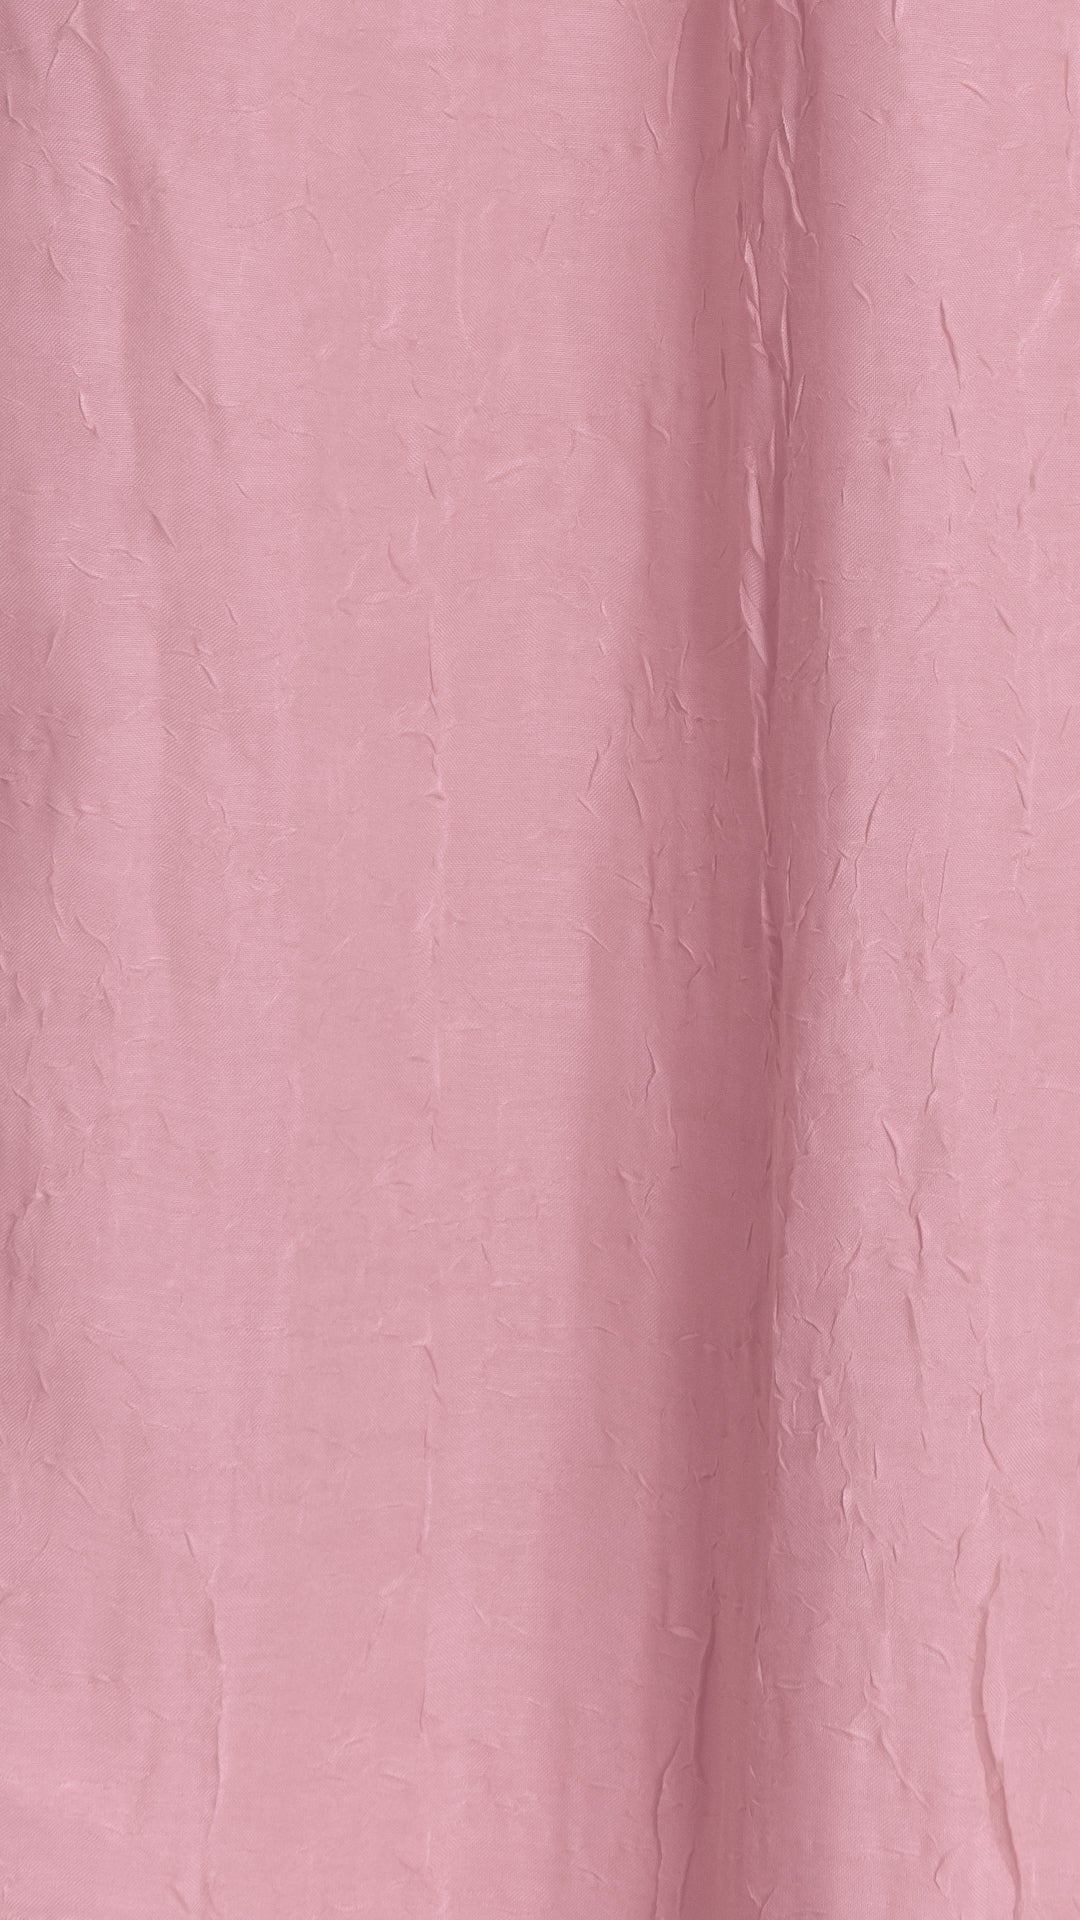 Blush Pink Scarf